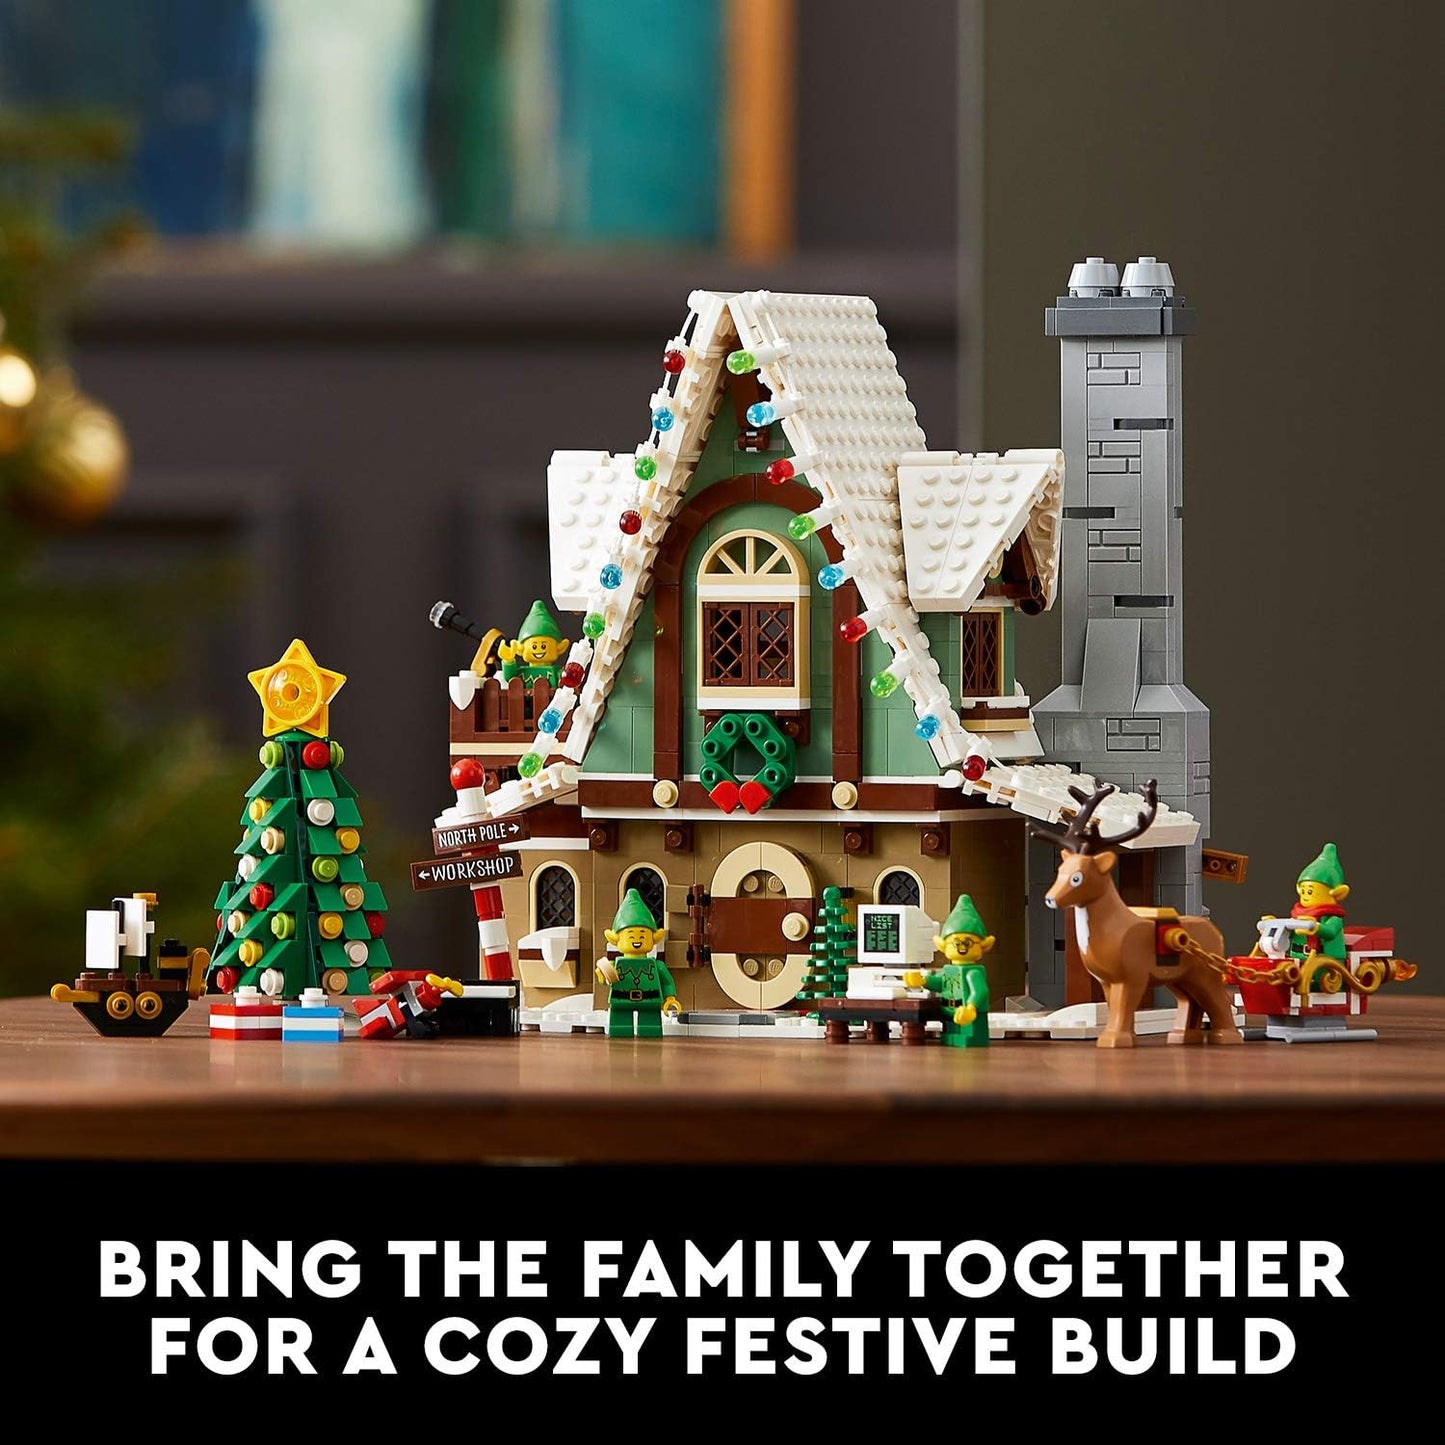 LEGO Seasonal Elf Clubhouse Set 10275, 18+ years